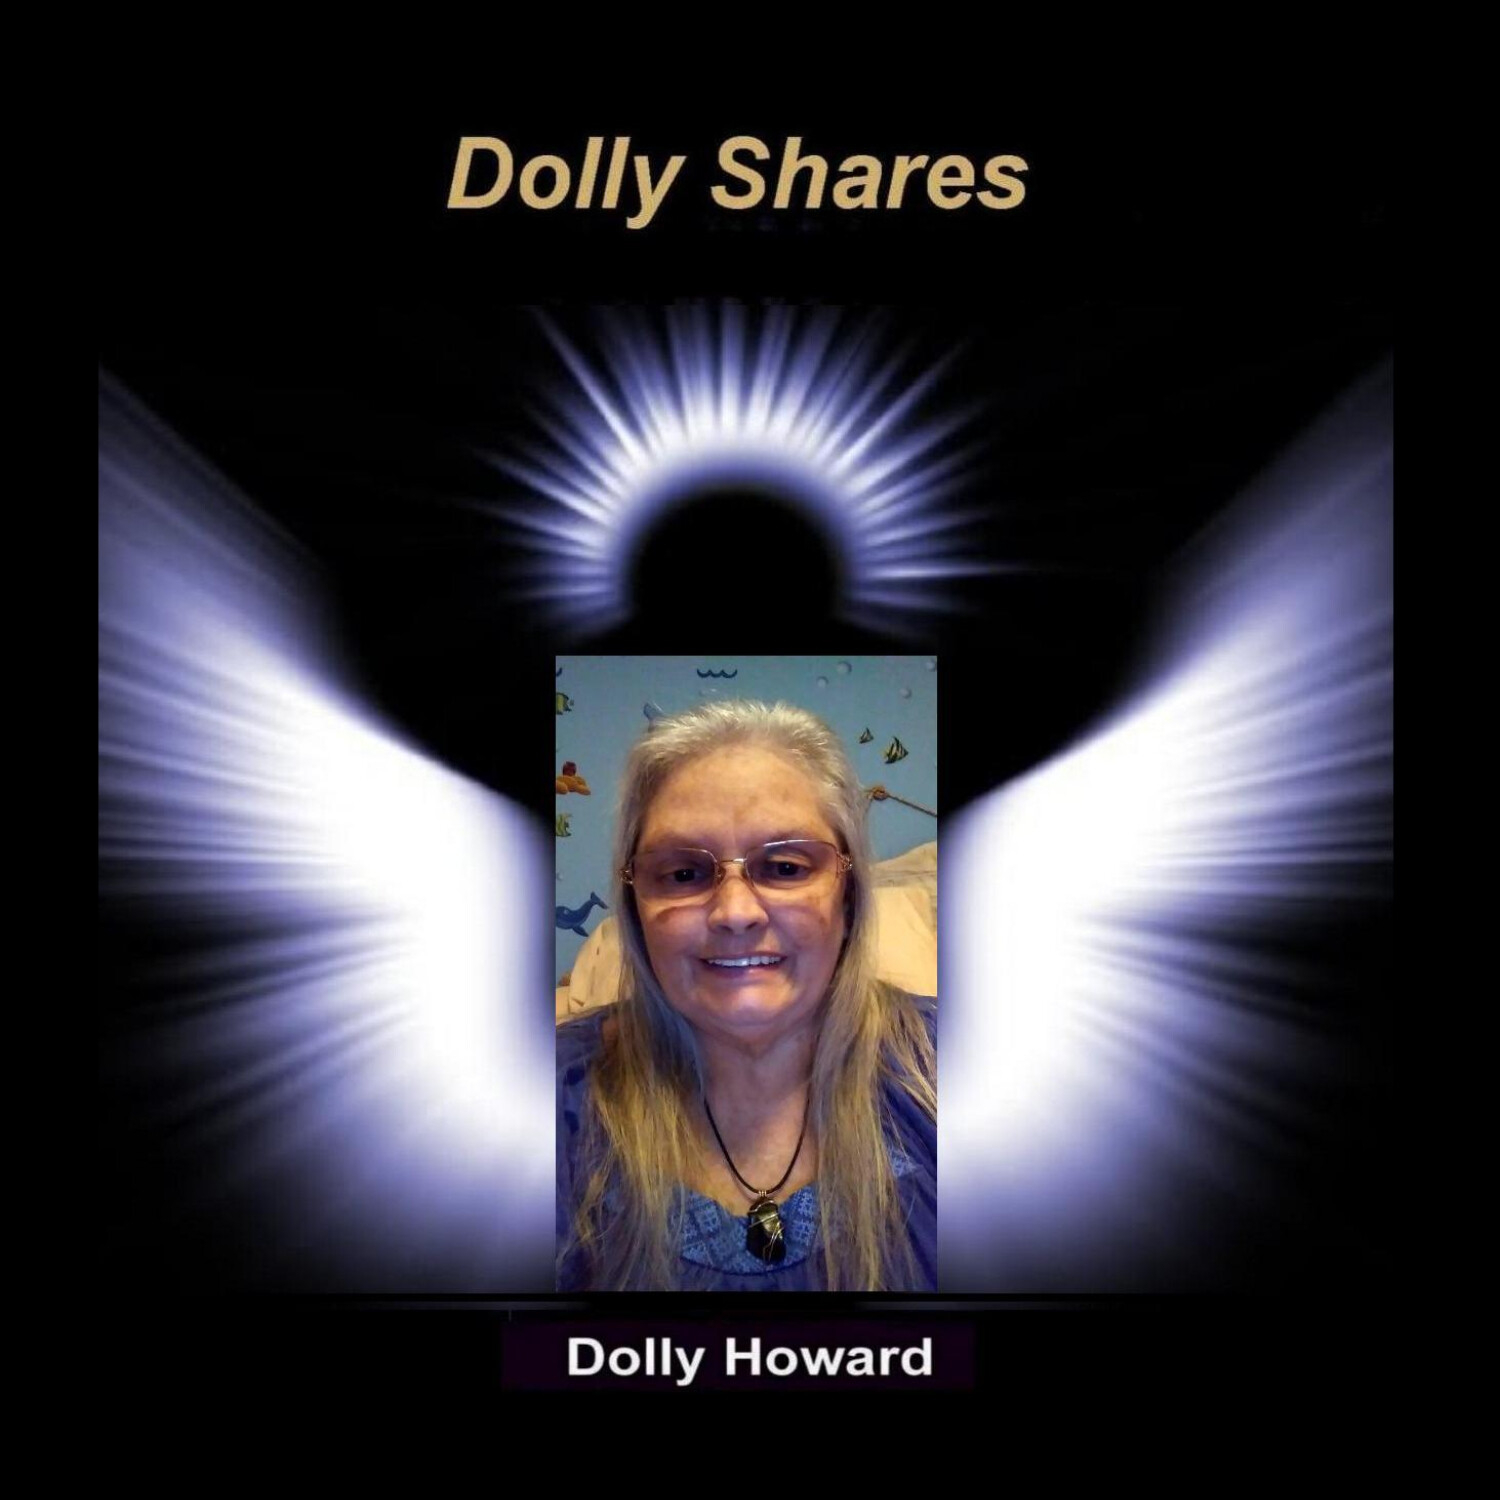 DOLLY SHARES with Dolly Howard 4/10/19 - Graduation Fiasco